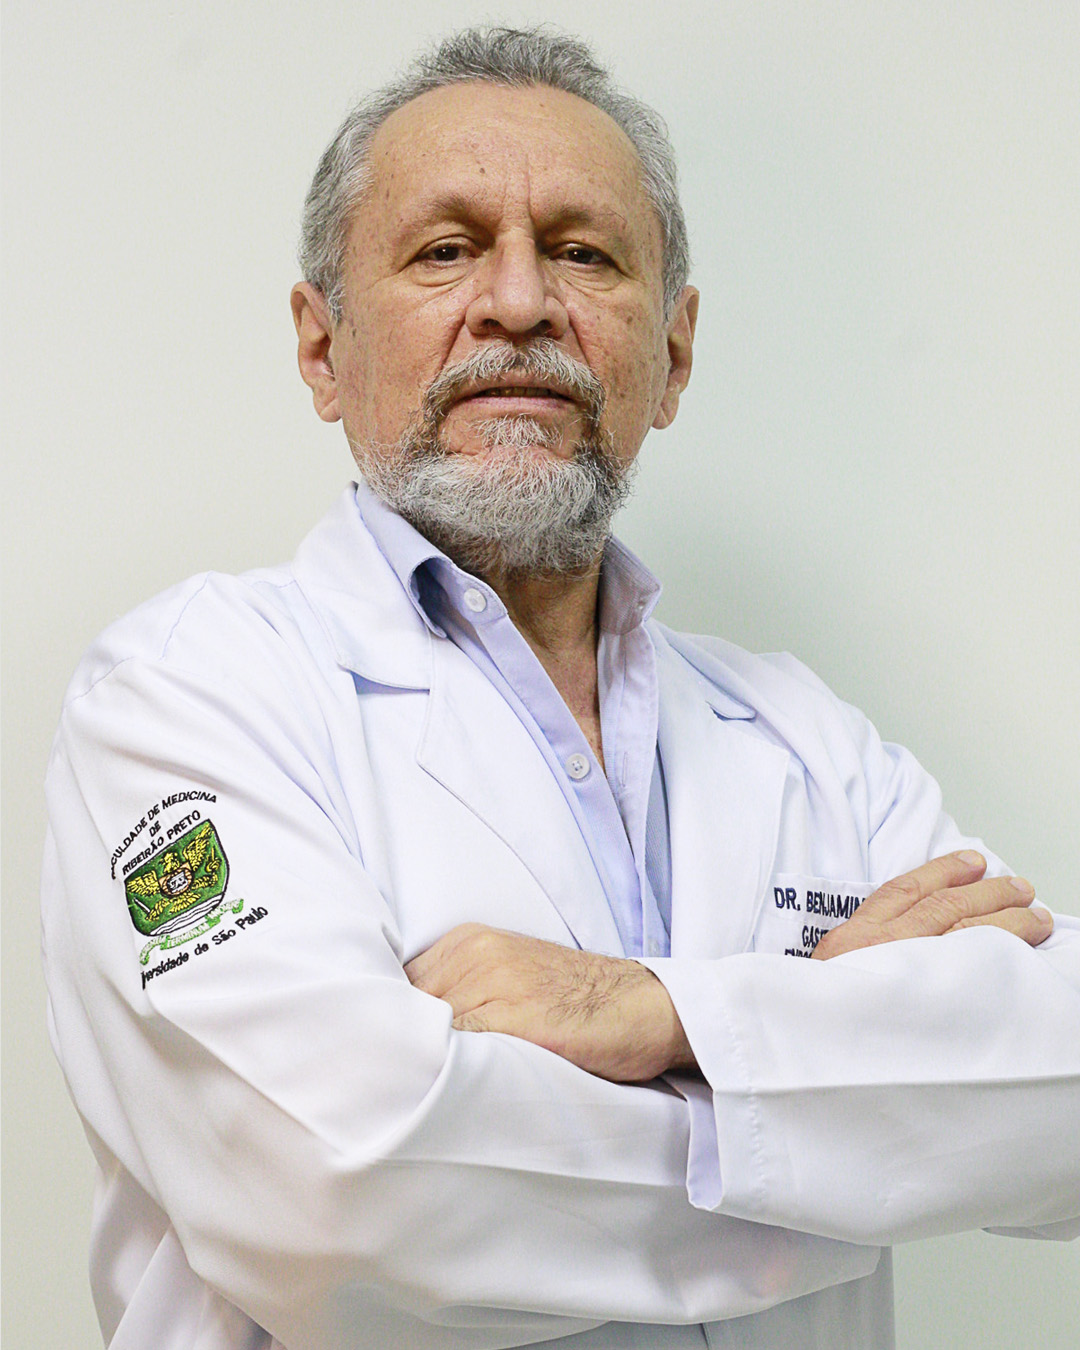 Dr. Benjamin Bosco